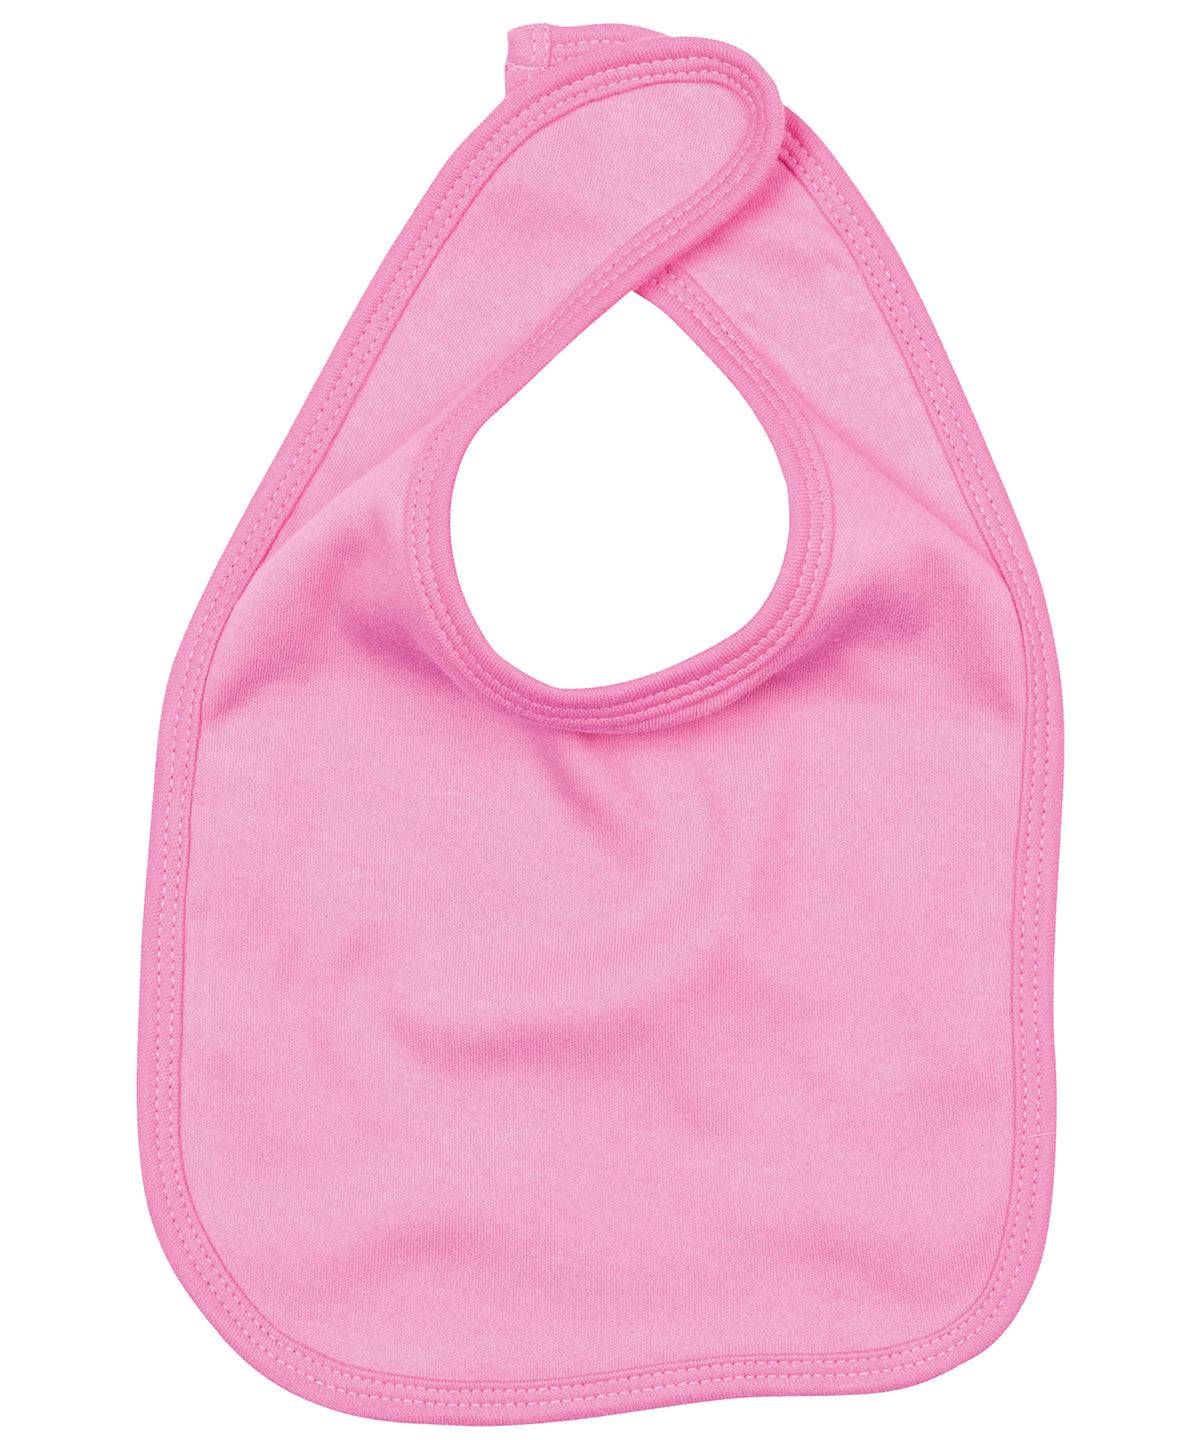 Bubblegum Pink - Baby bib